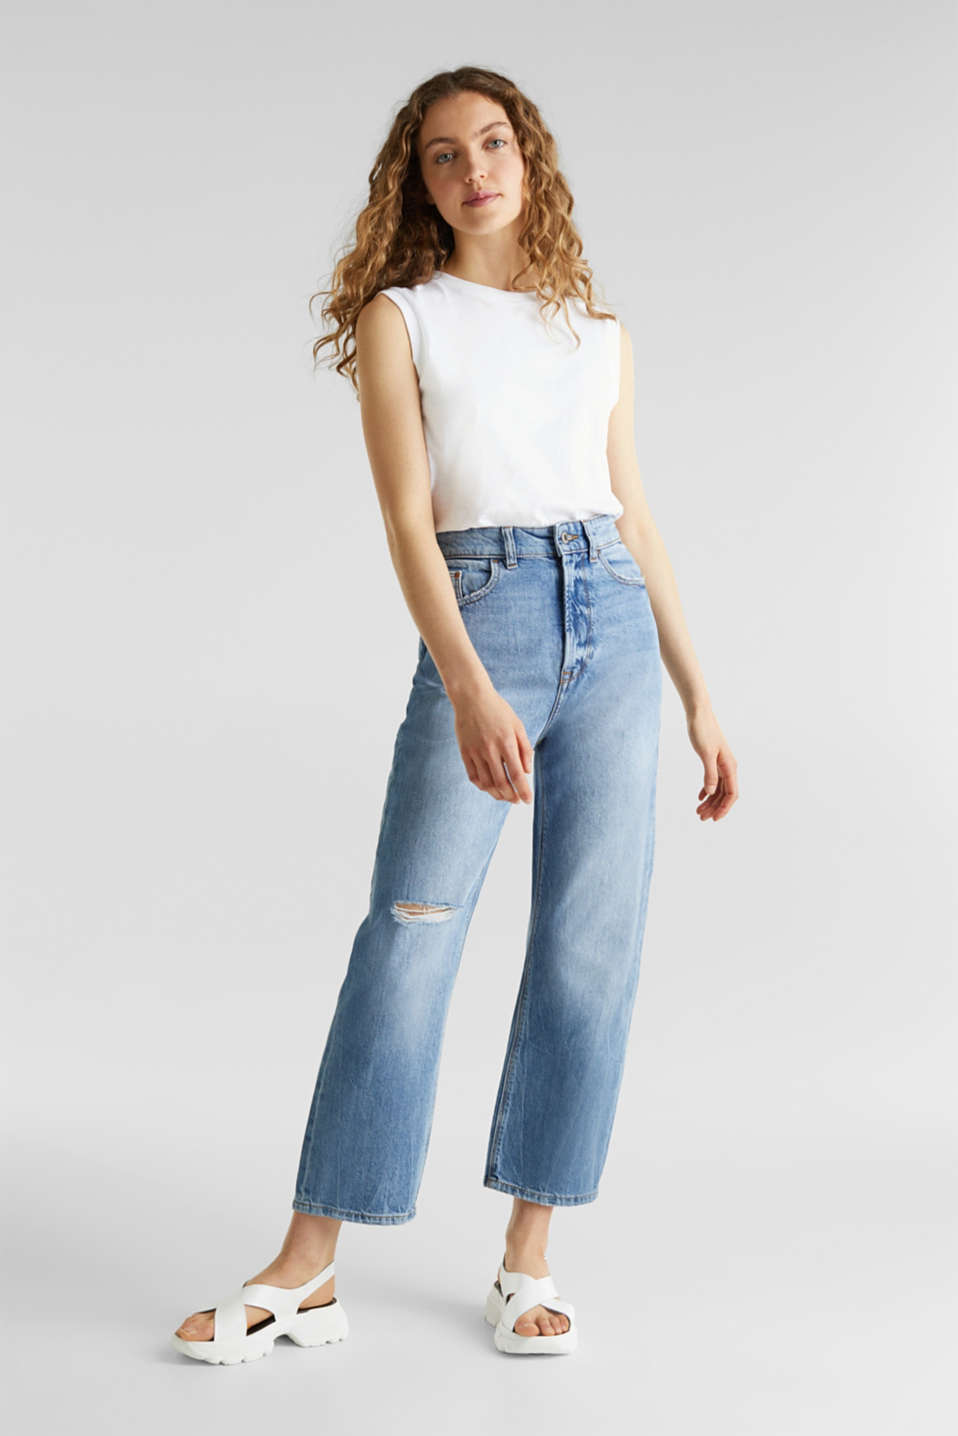 Verbazingwekkend edc - Enkellange jeans met wijde pijpen kopen in de online shop BE-26